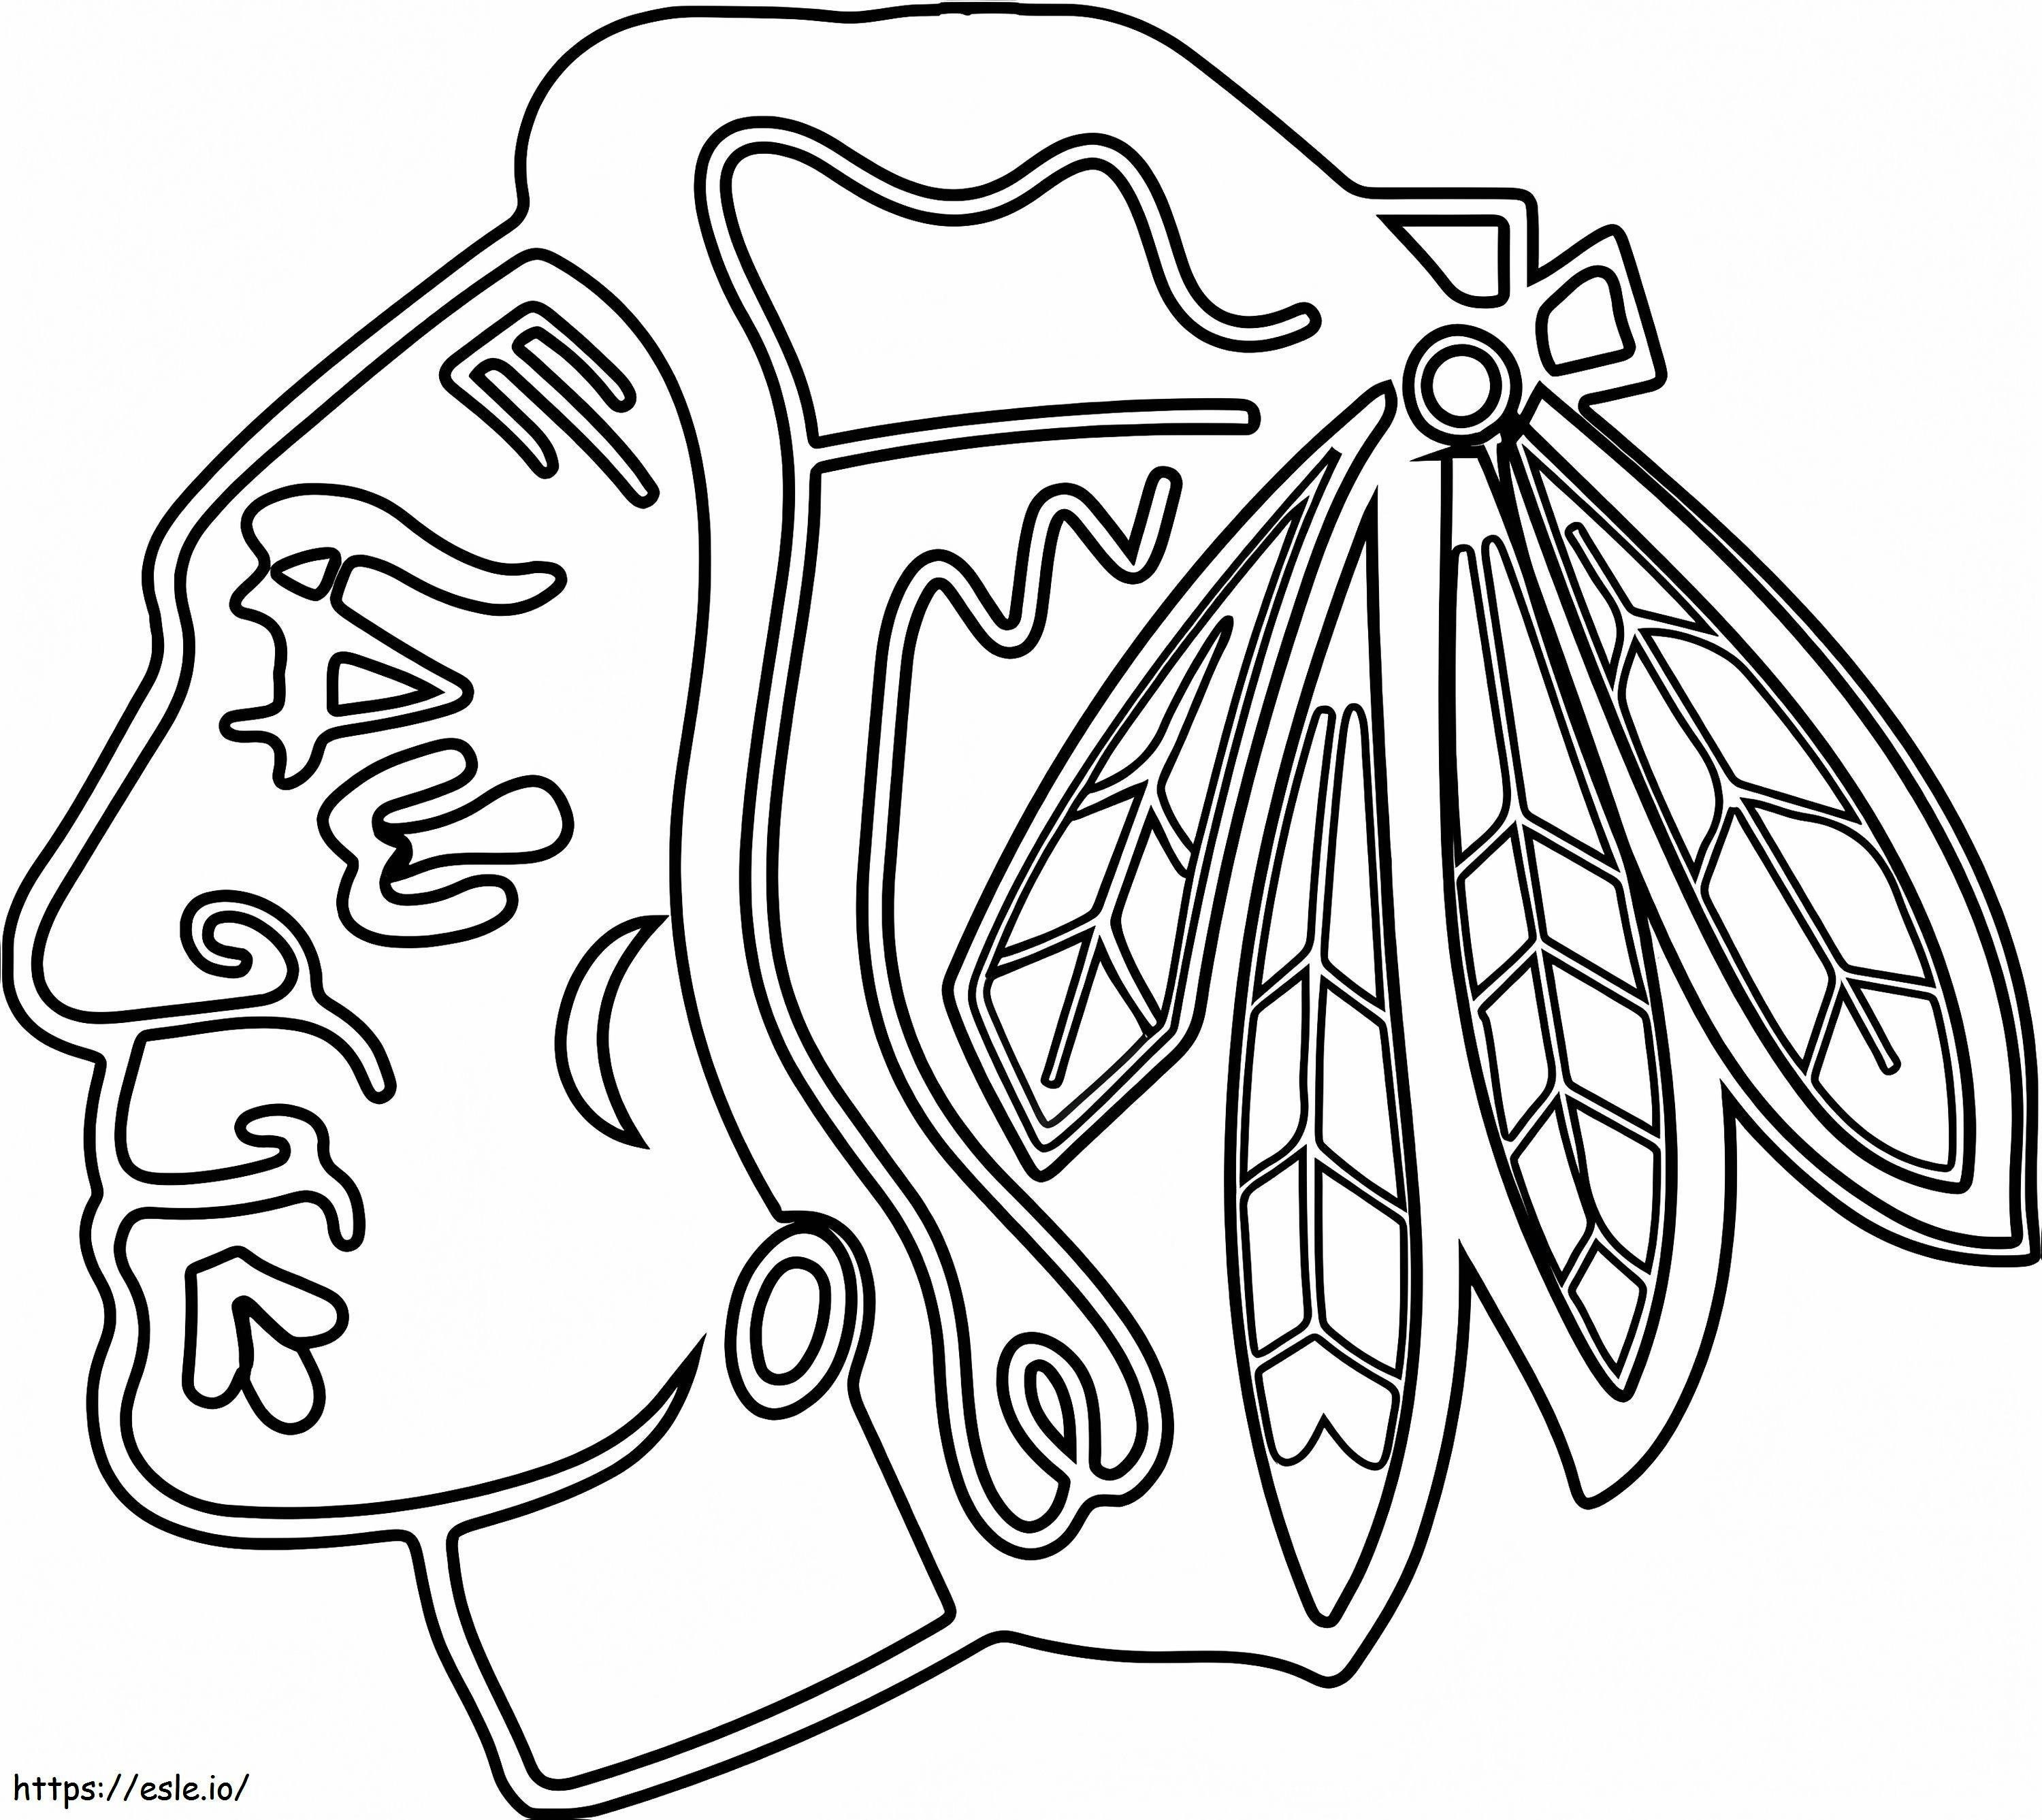 Chicago Blackhawks-logo kleurplaat kleurplaat